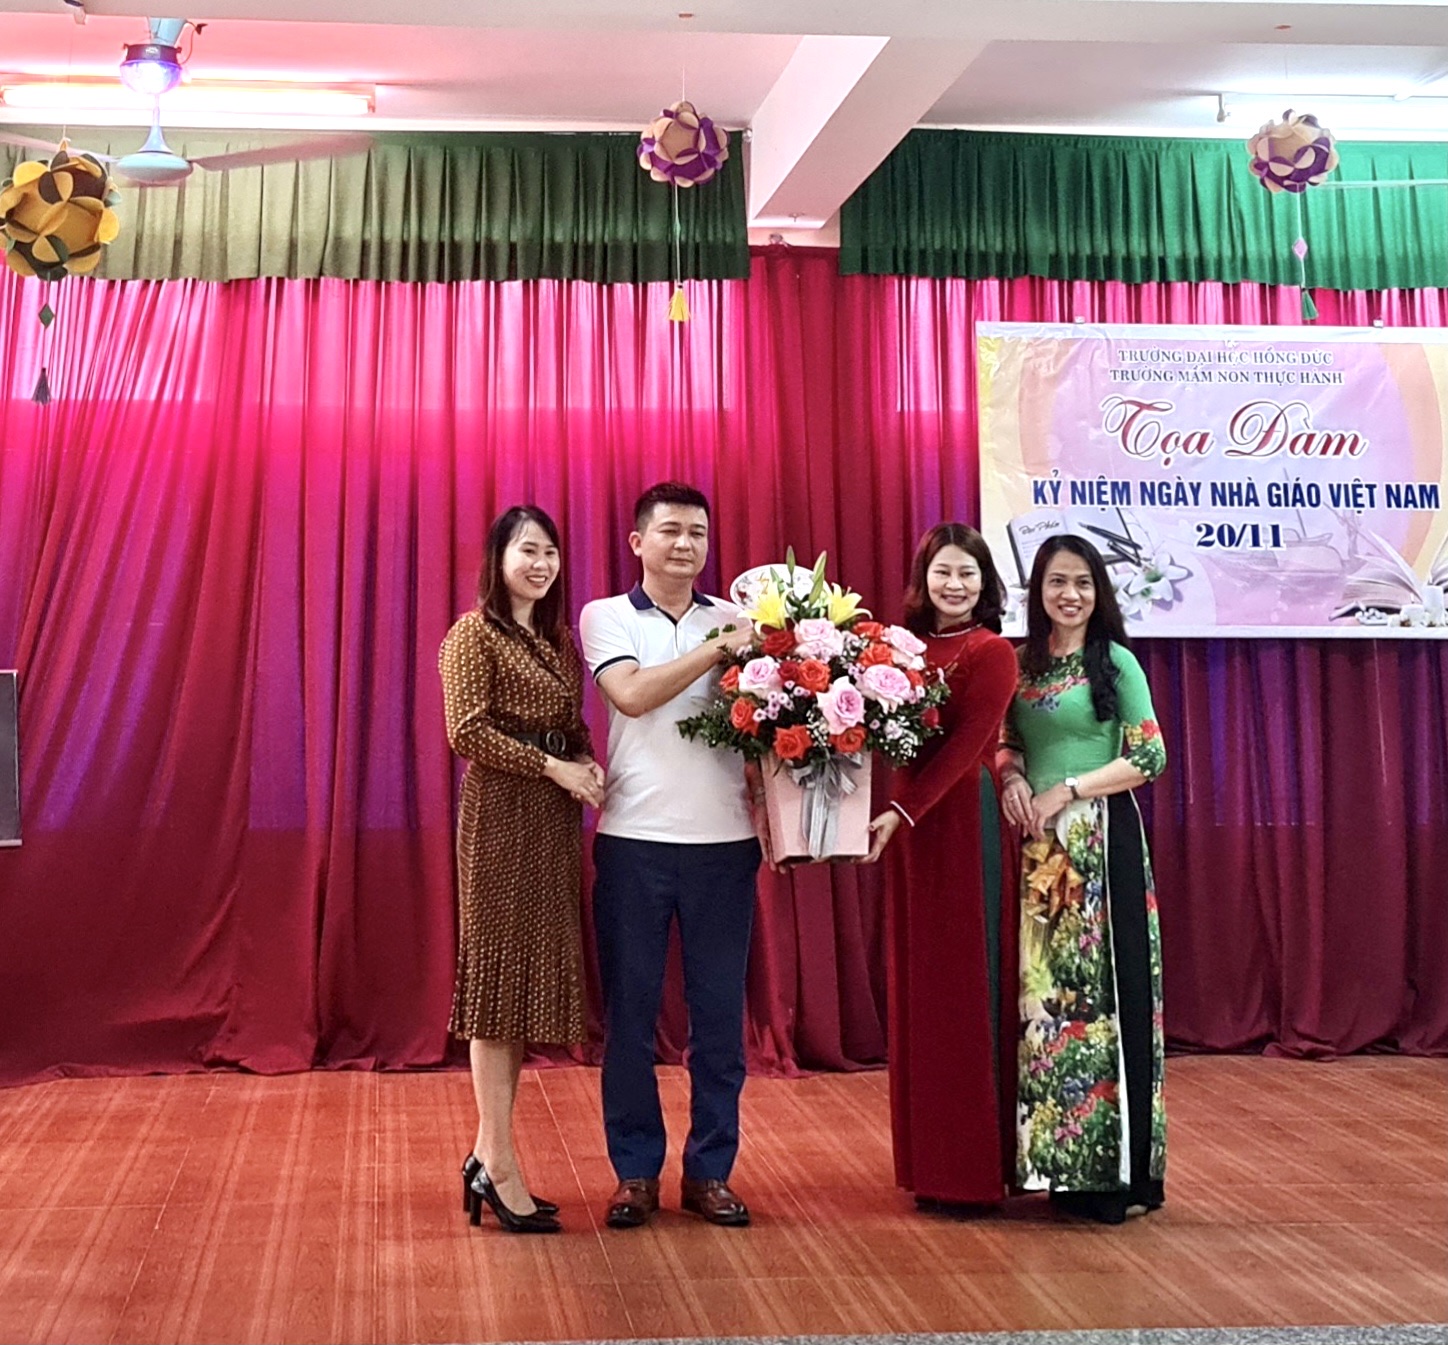 Trường MN Thực Hành Hồng Đức tổ chức buổi tọa đàm kỷ niệm 40 năm ngày Nhà giáo Việt Nam